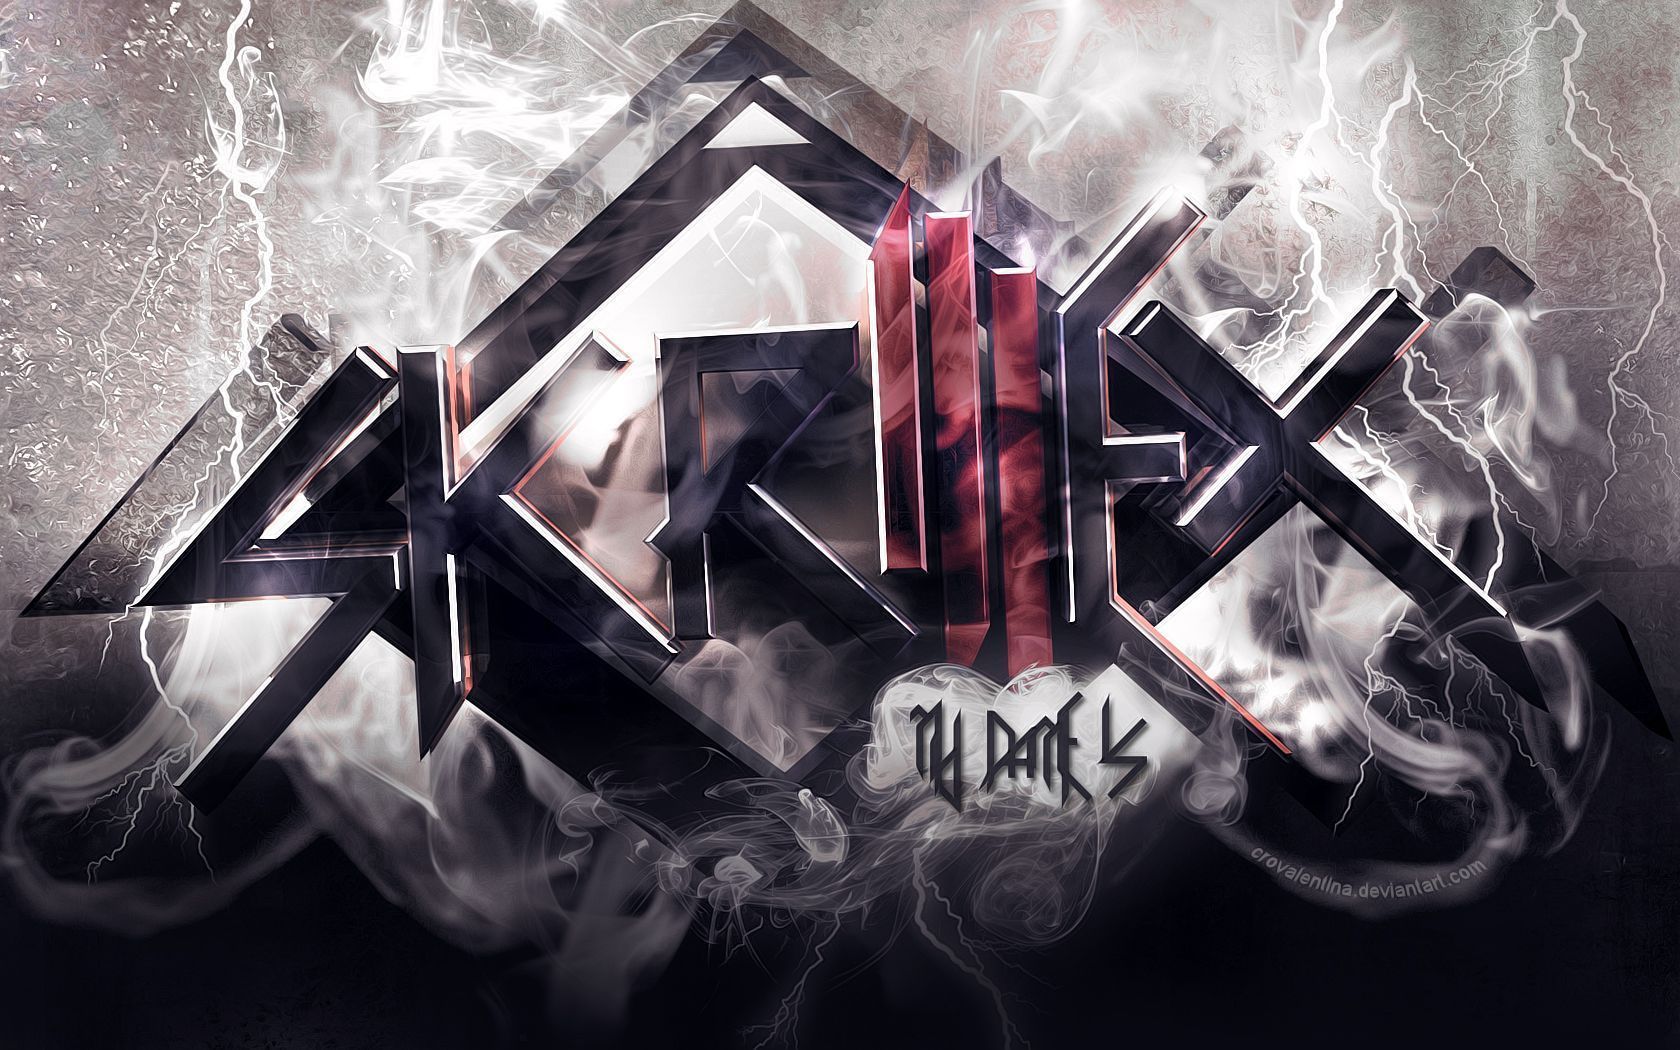 My Name Is SKRILLEX - Skrillex Wallpaper (32794187) - Fanpop